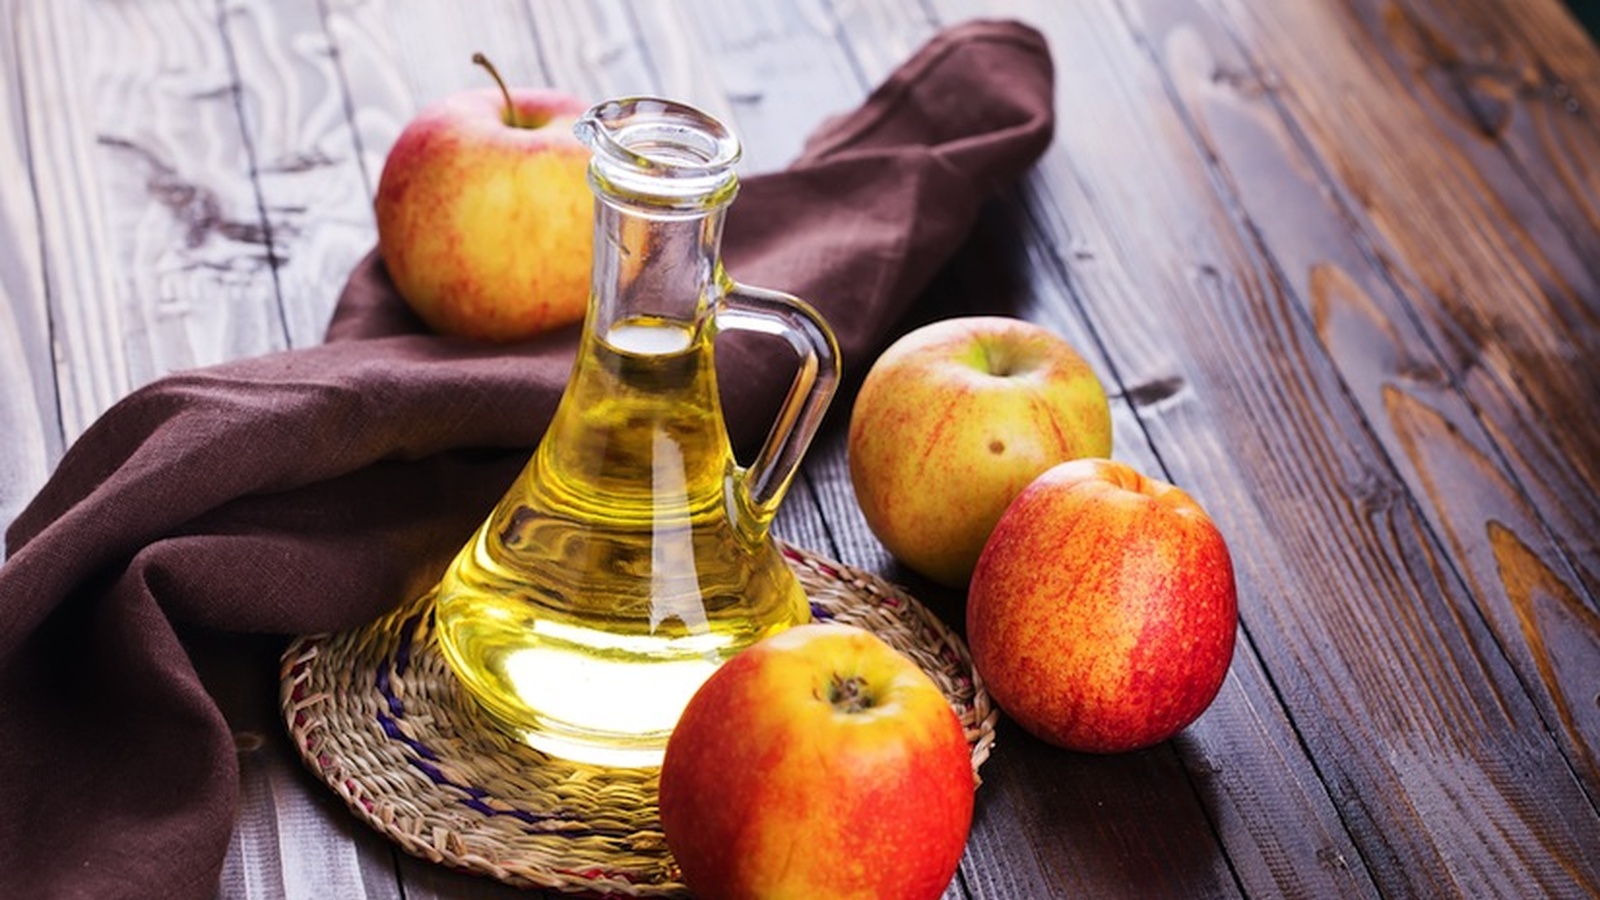 8 Proven Benefits of Apple Cider Vinegar